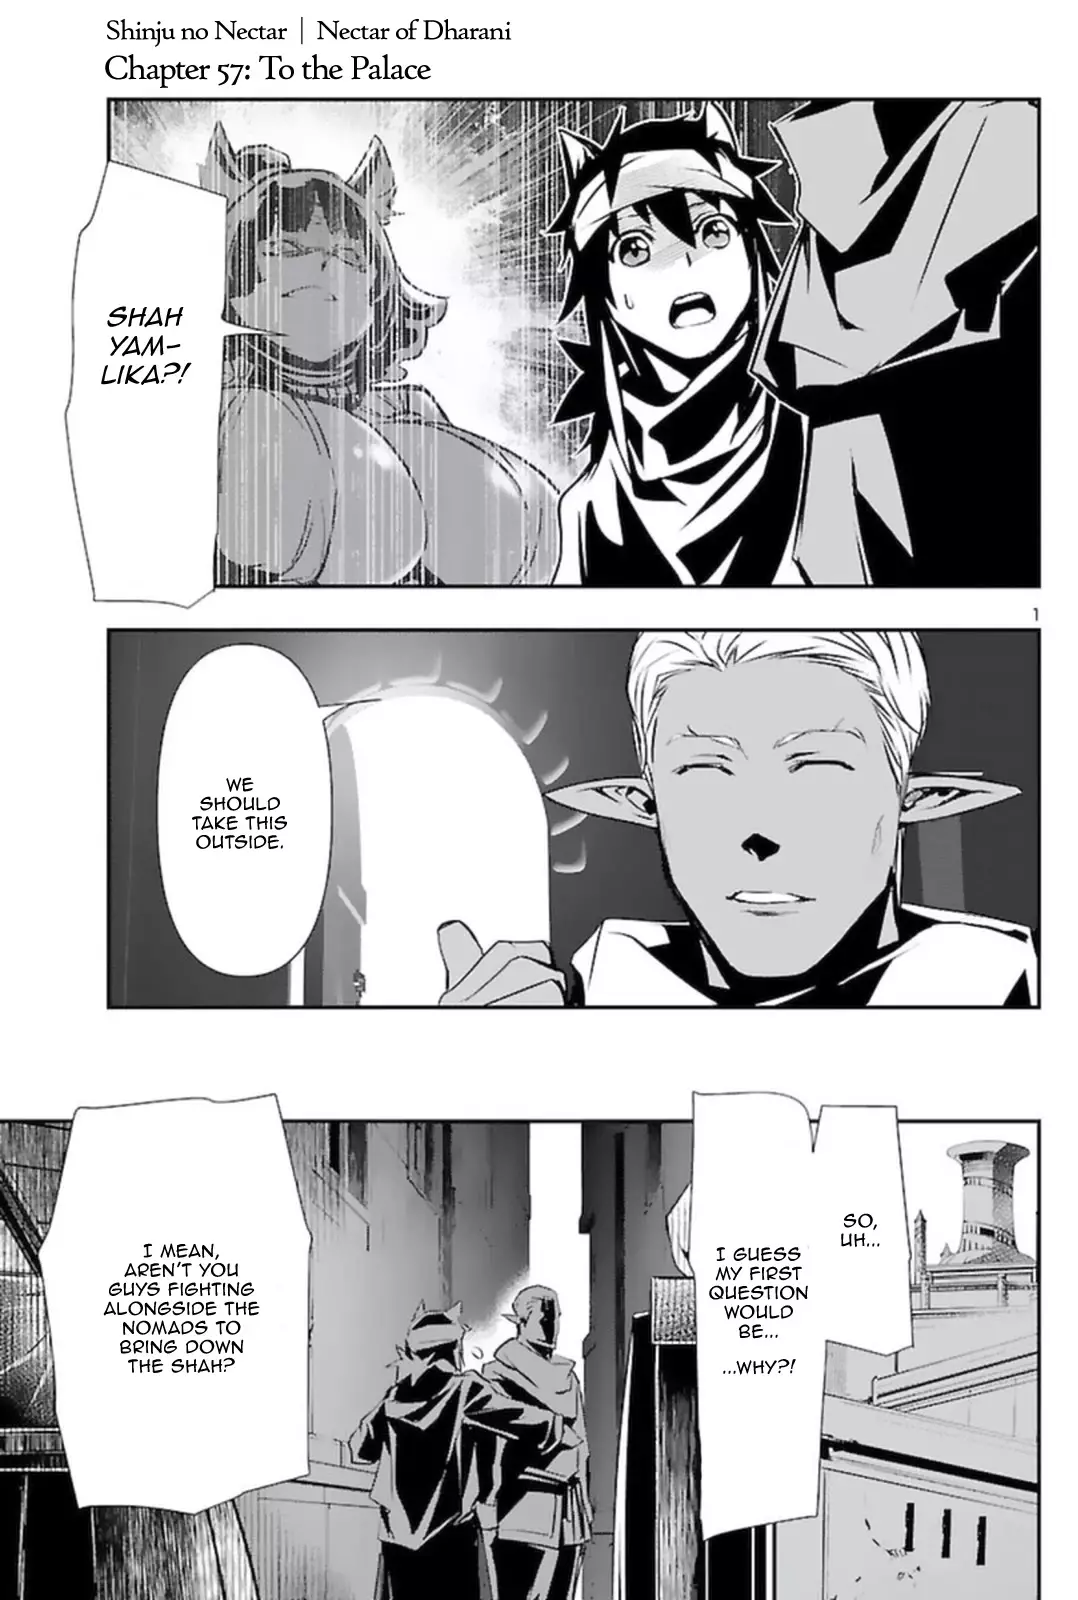 Shinju no Nectar - 57 page 1